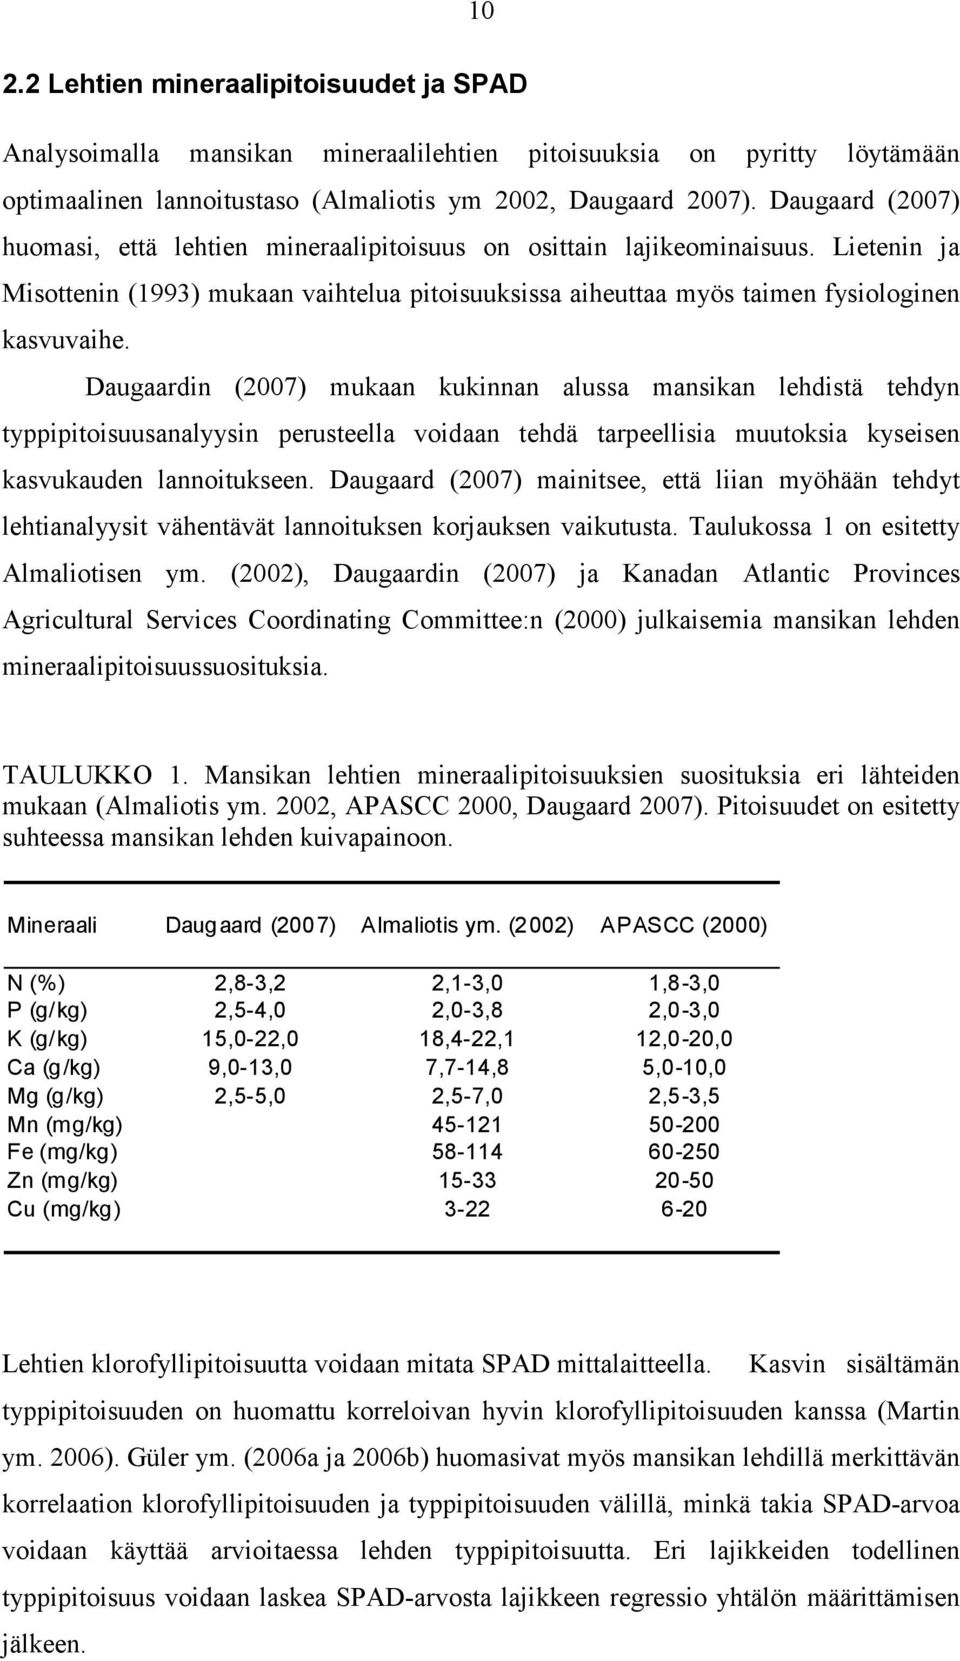 Daugaardin (2007) mukaan kukinnan alussa mansikan lehdistä tehdyn typpipitoisuusanalyysin perusteella voidaan tehdä tarpeellisia muutoksia kyseisen kasvukauden lannoitukseen.